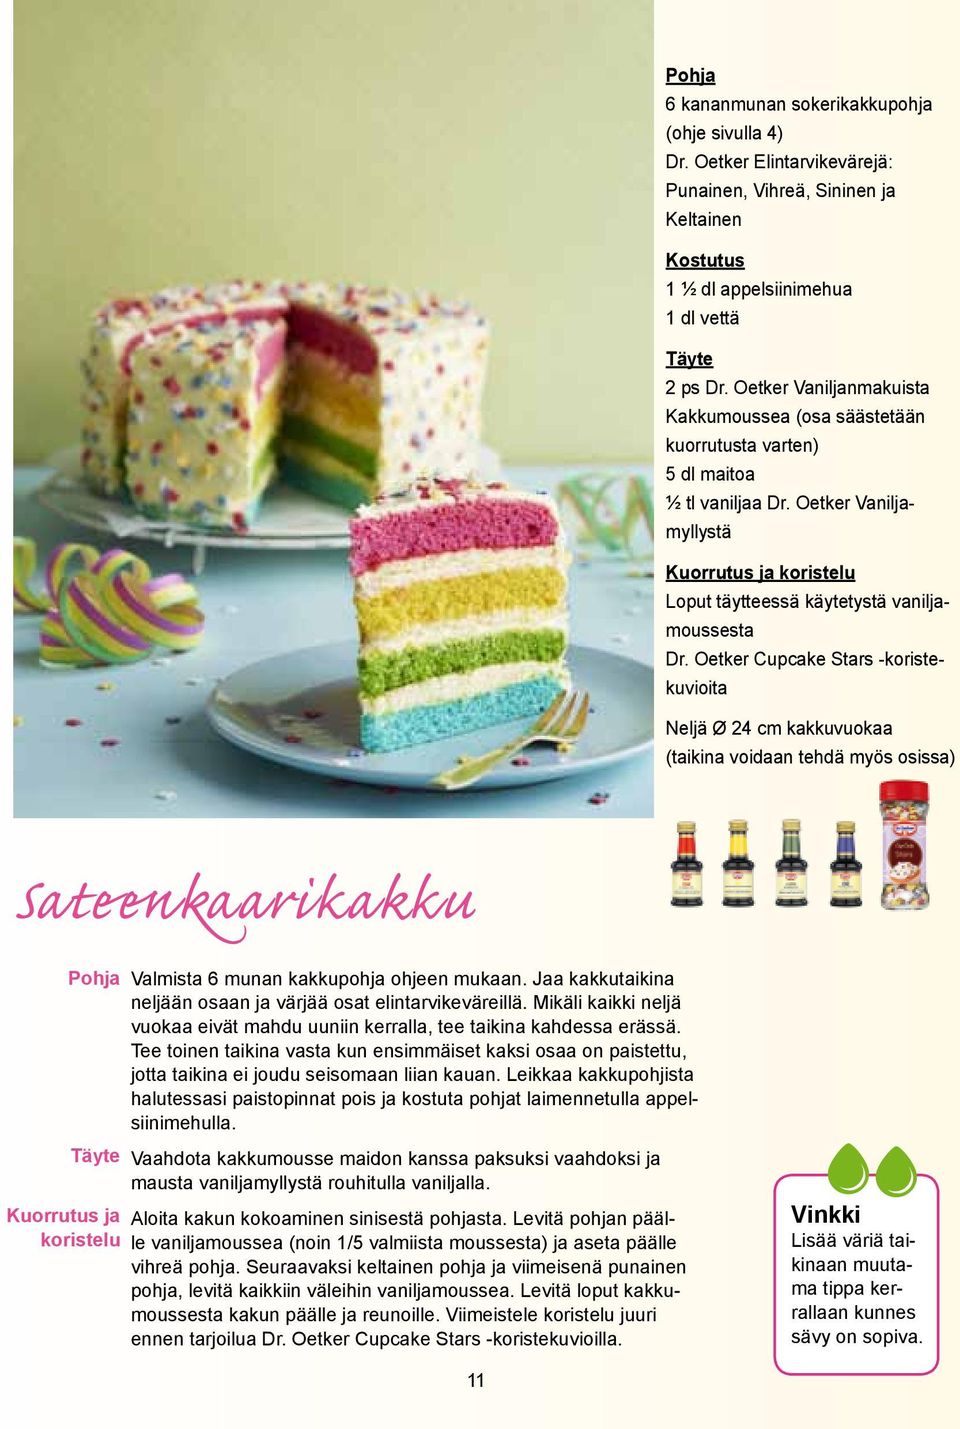 Oetker Cupcake Stars -koristekuvioita Neljä Ø 24 cm kakkuvuokaa (taikina voidaan tehdä myös osissa) Sateenkaarikakku Pohja Kuorrutus ja koristelu Valmista 6 munan kakkupohja ohjeen mukaan.